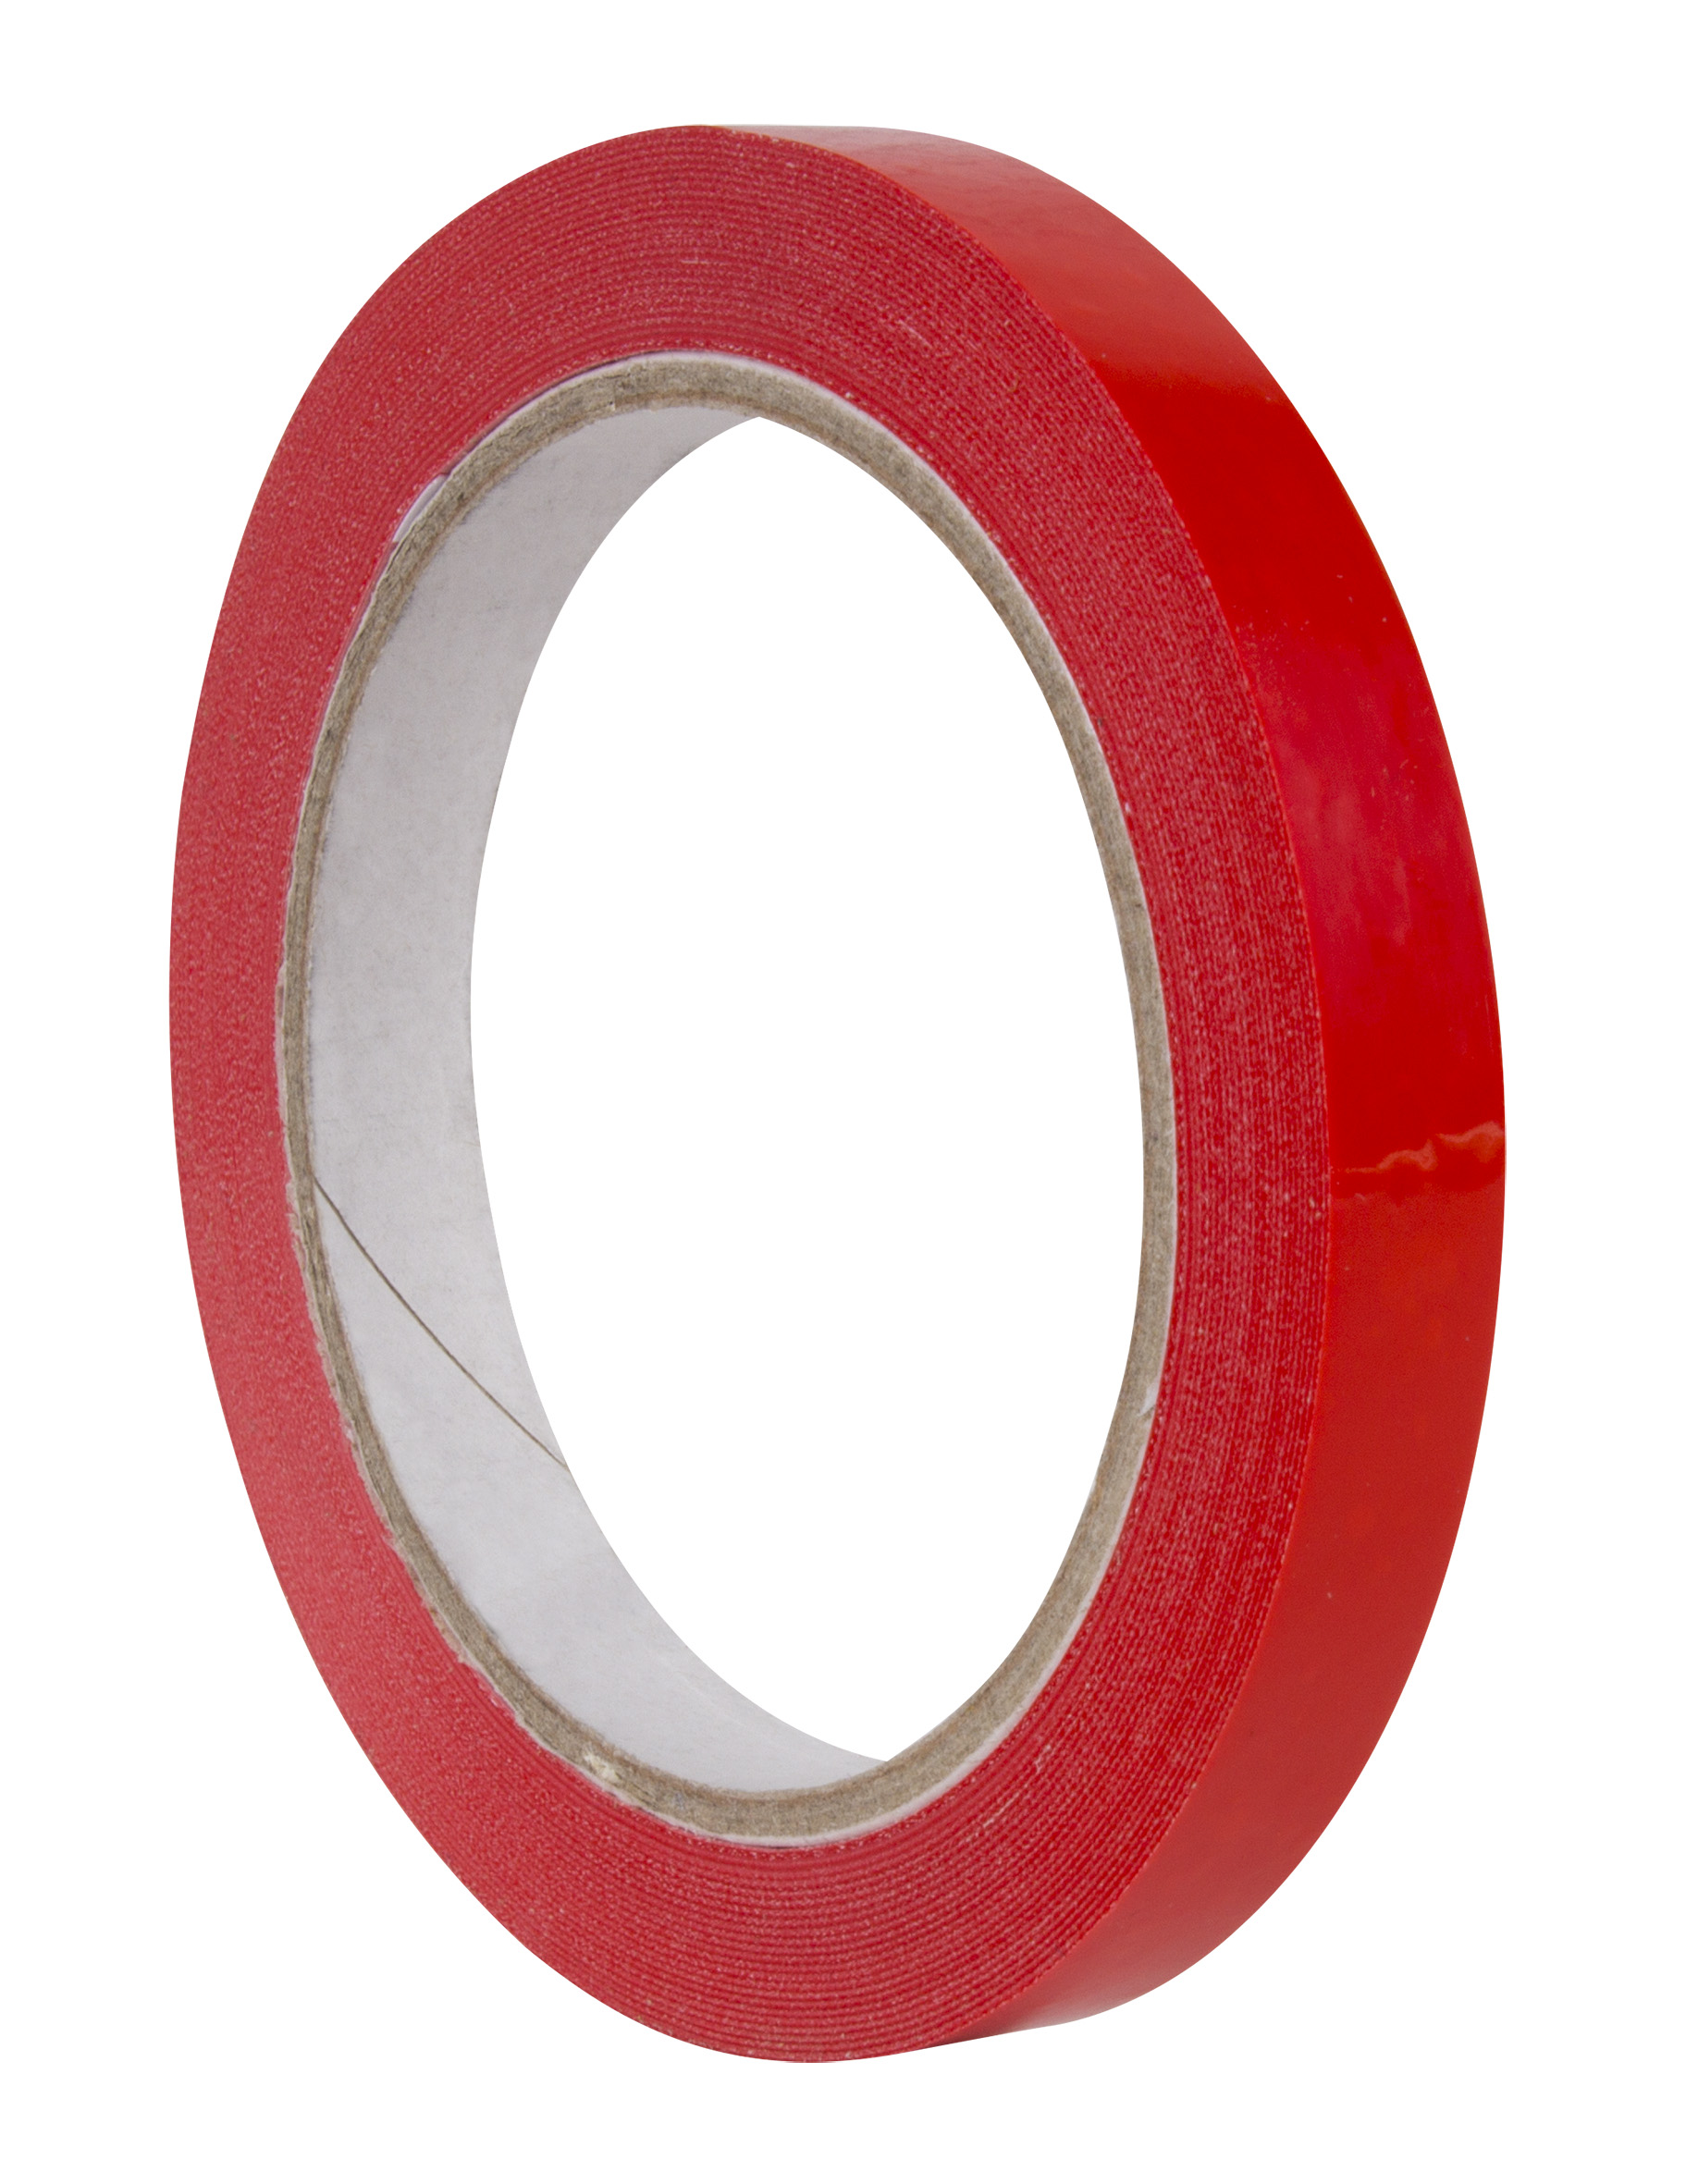 Ruban Adhésif Apli Rouge 12mm x 66m - Résistant à la Déchirure - Facile à Couper - Idéal pour l'Artisanat et l'Emballage - Rouge